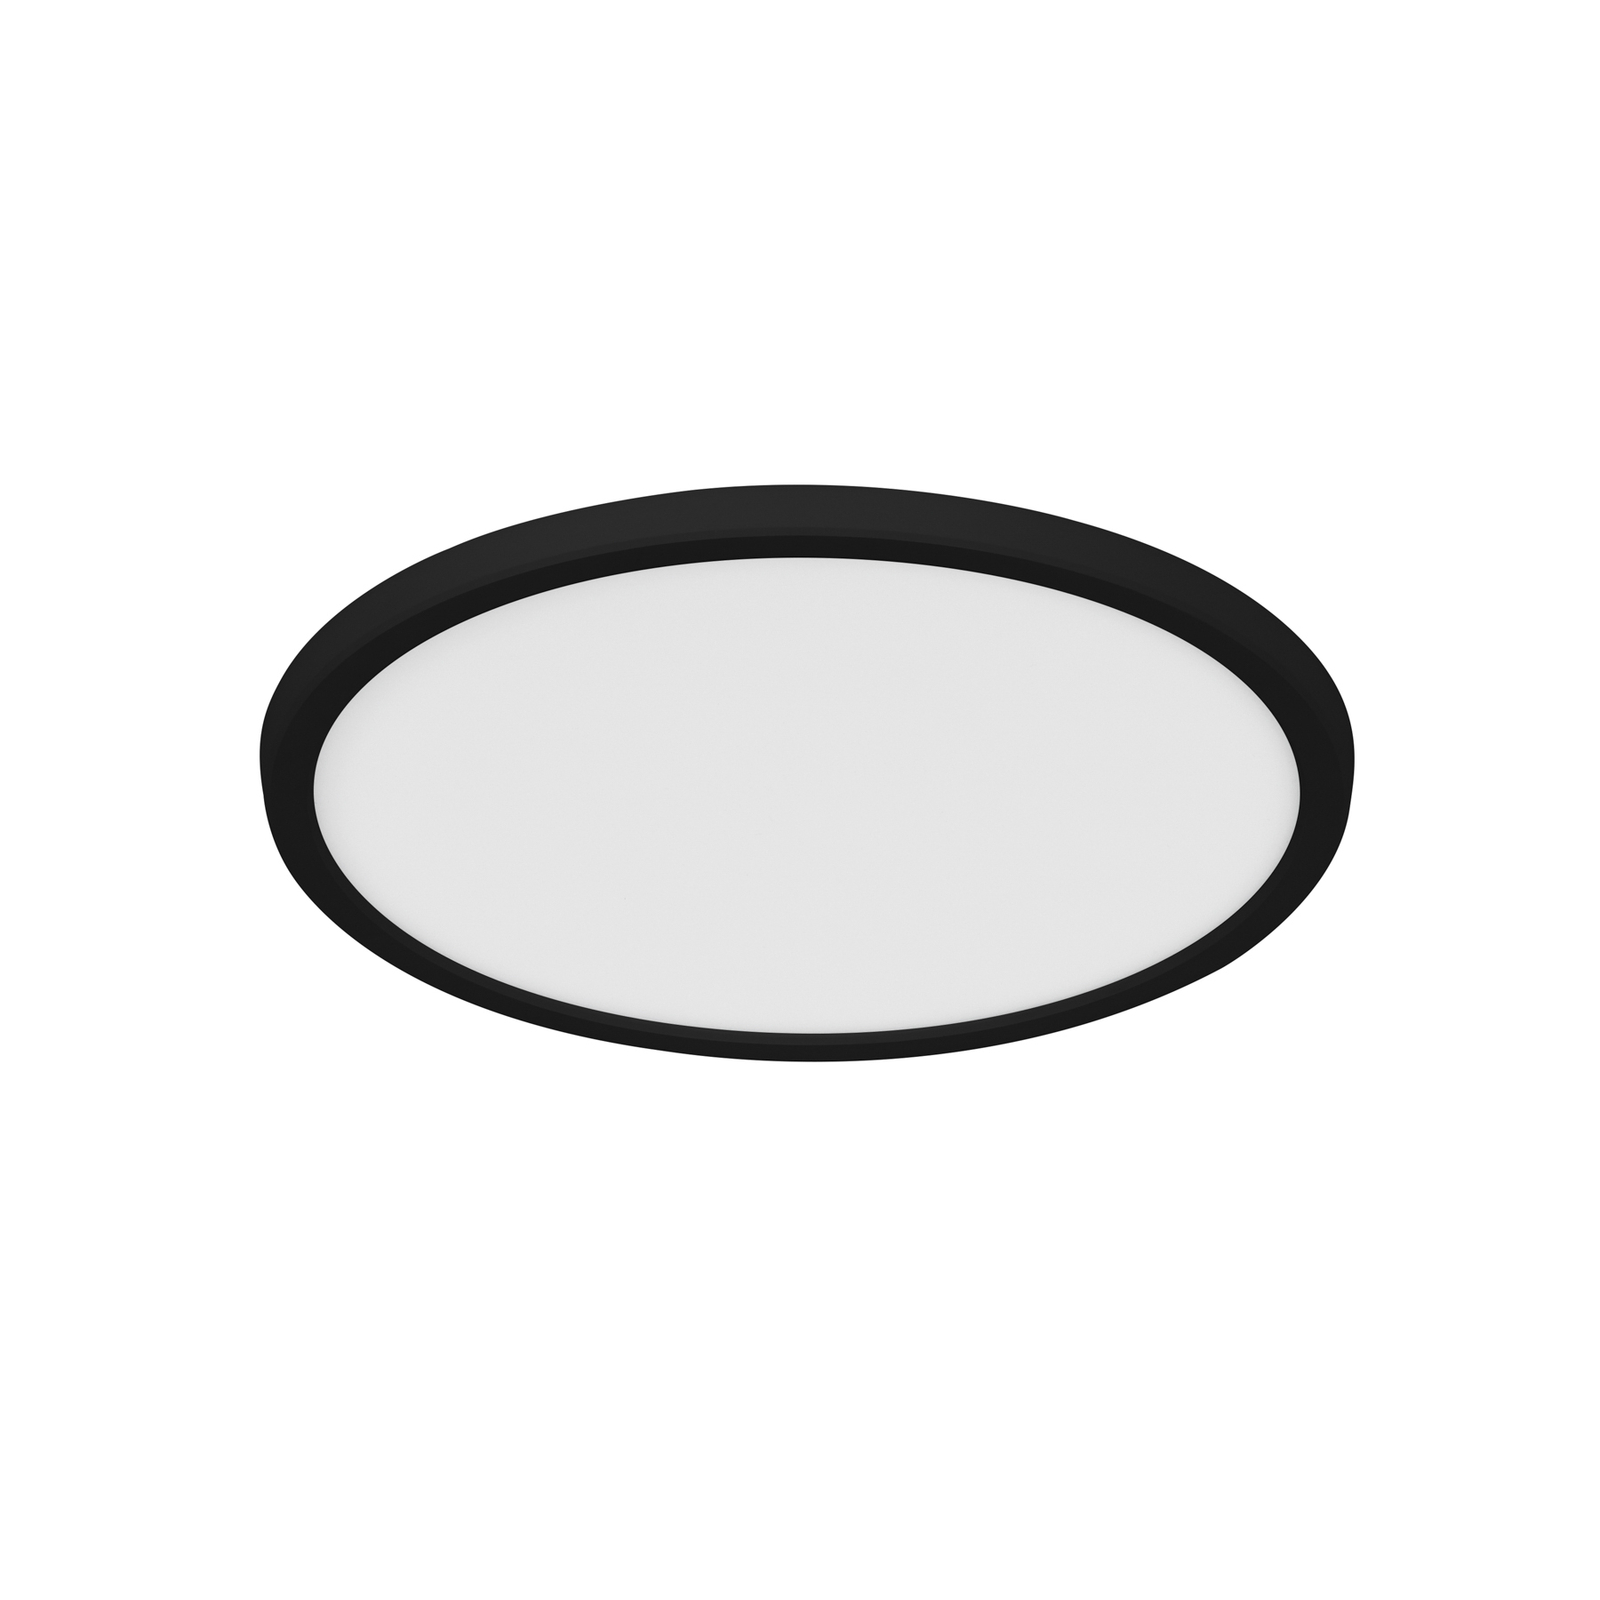 LED-Deckenleuchte Oja Smart, schwarz, Ø 29 cm